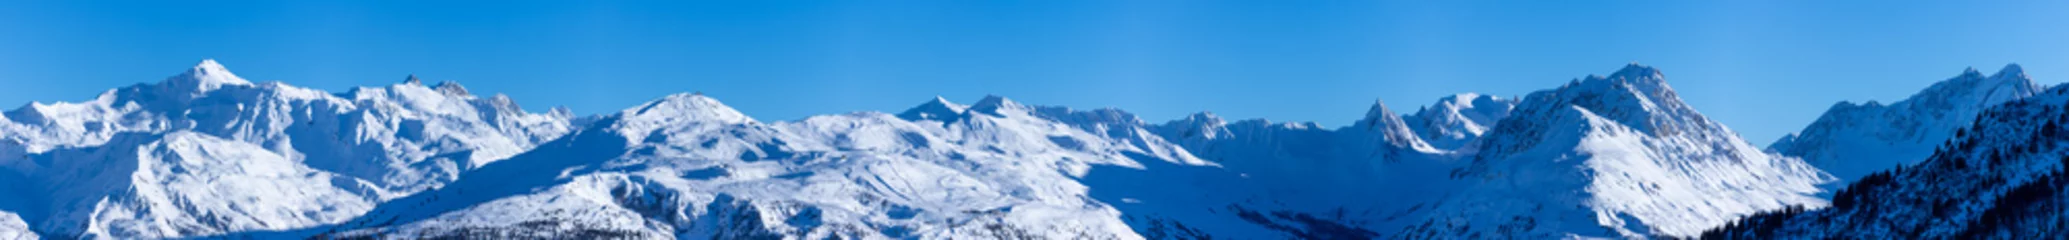 Poster Alpen vue ultra panoramique sur une chaîne de montagnes enneigées des alpes